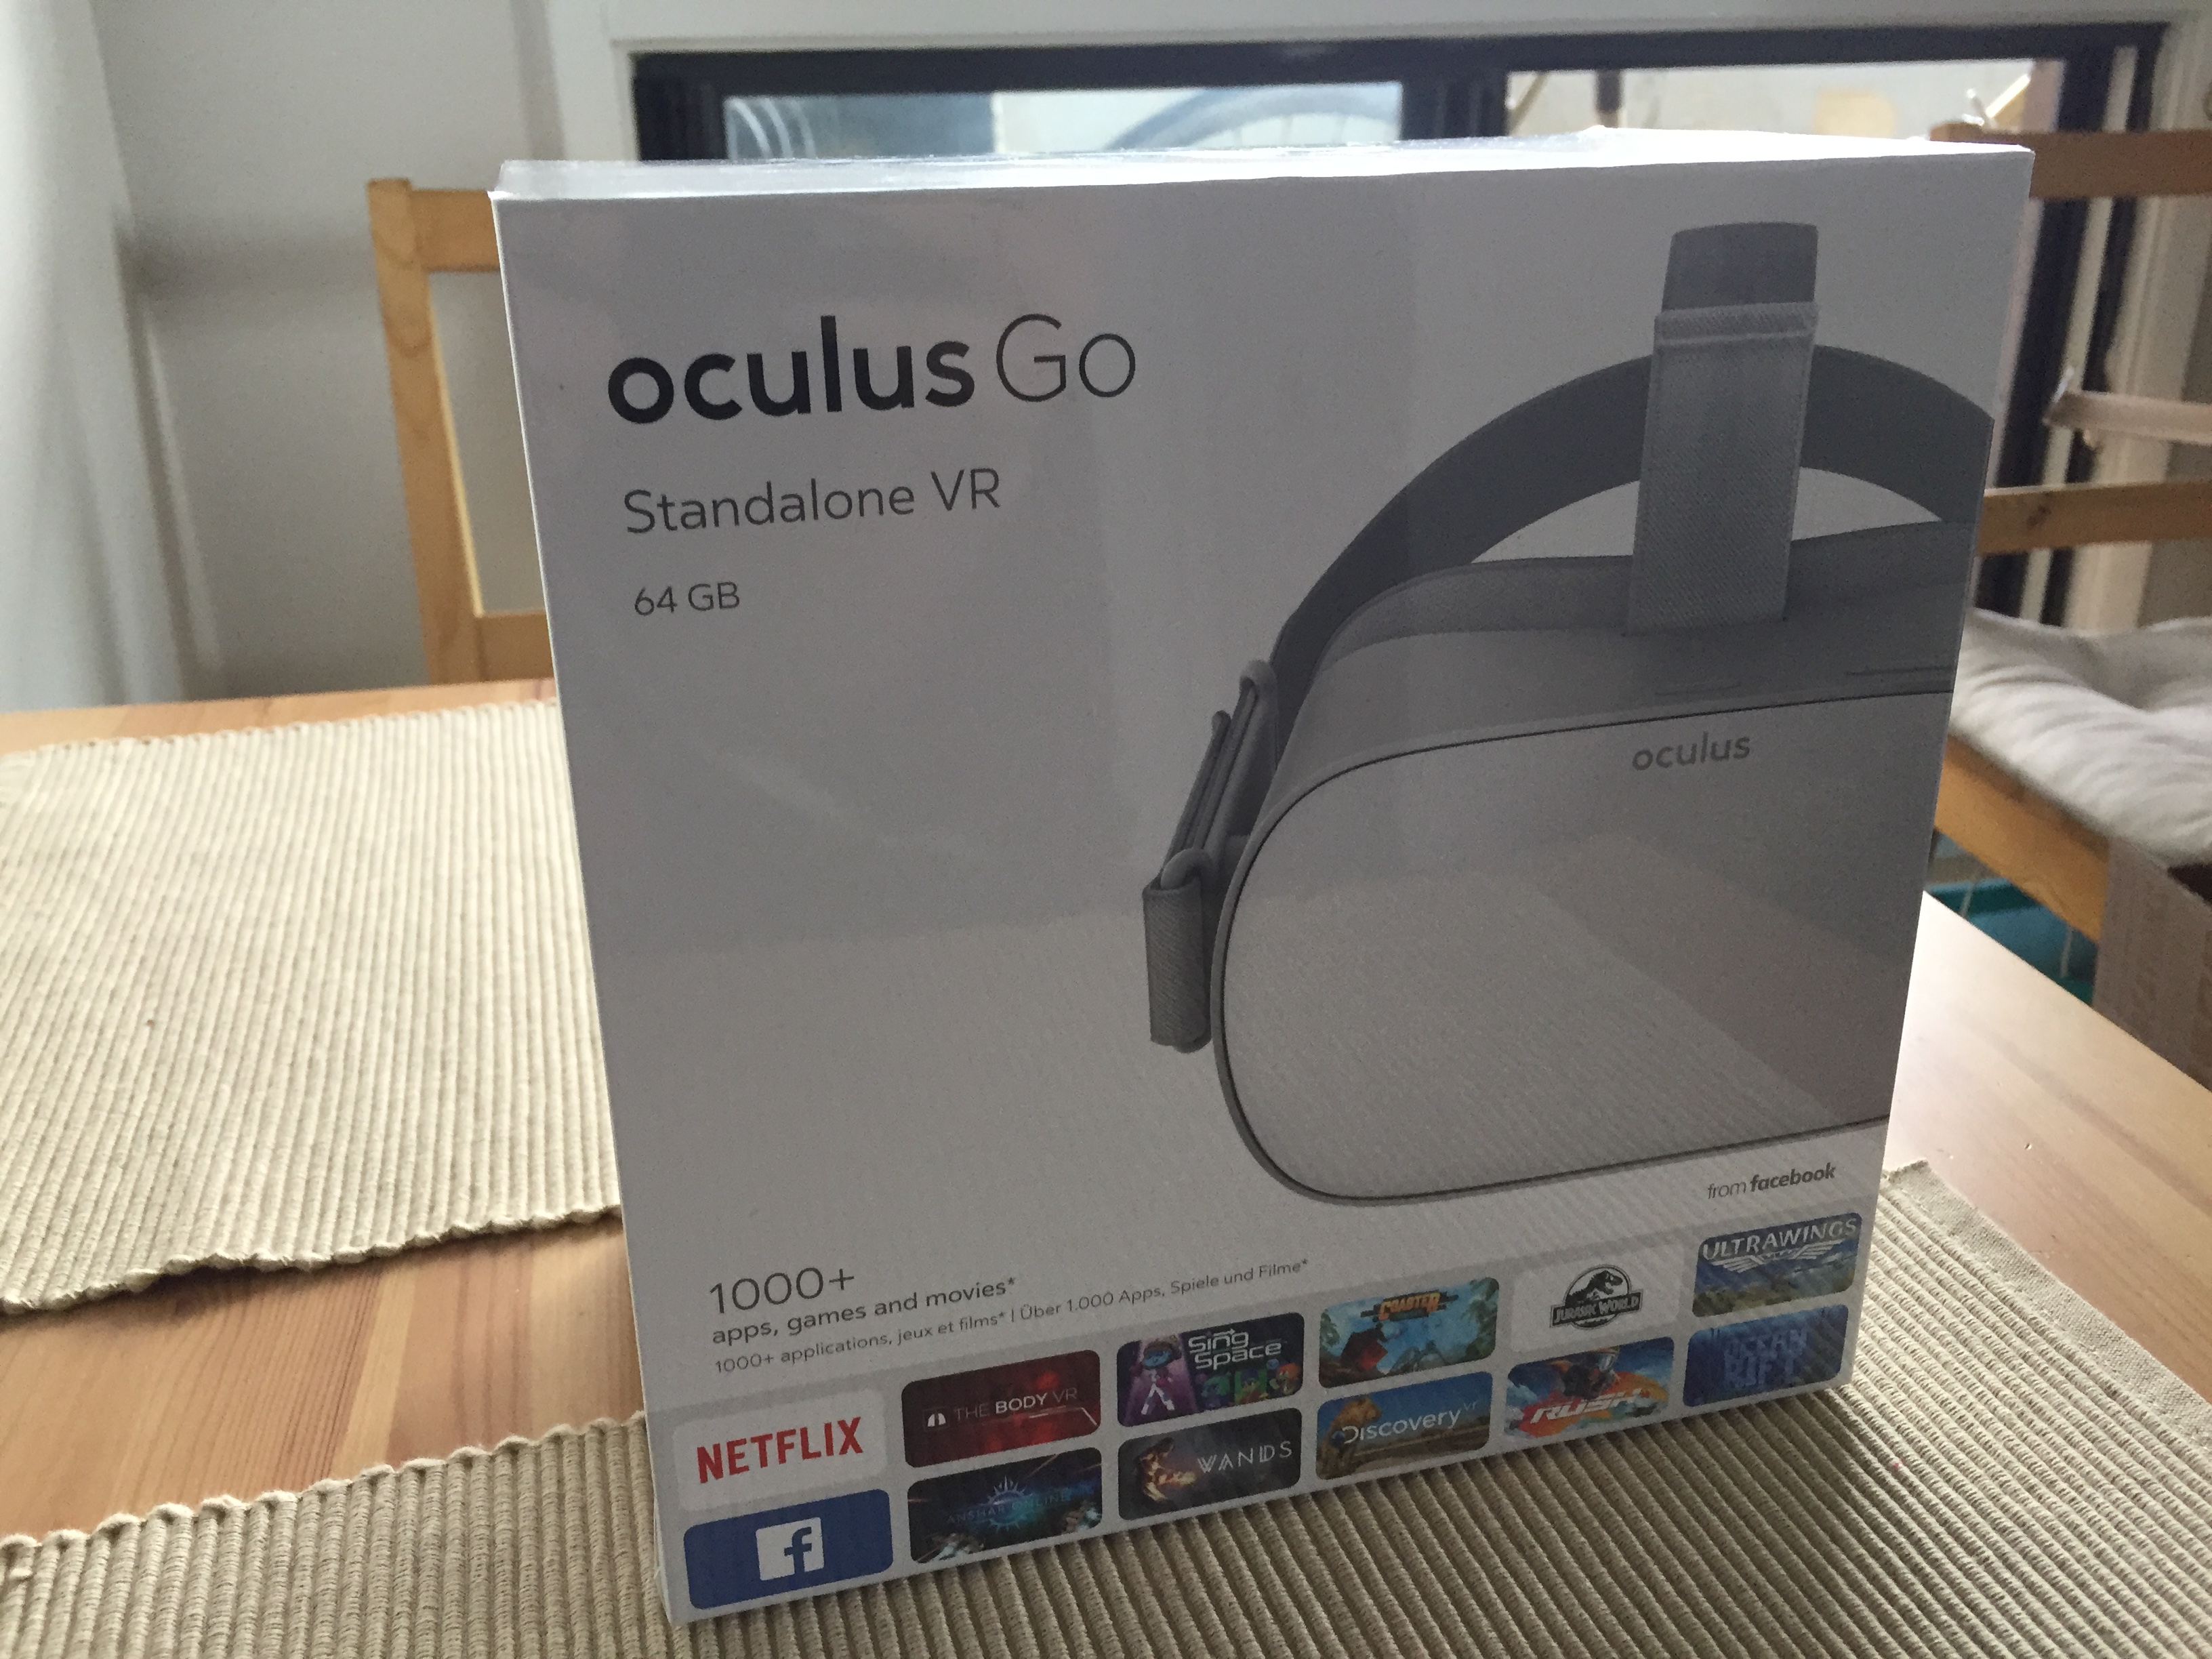 Oculus Go box